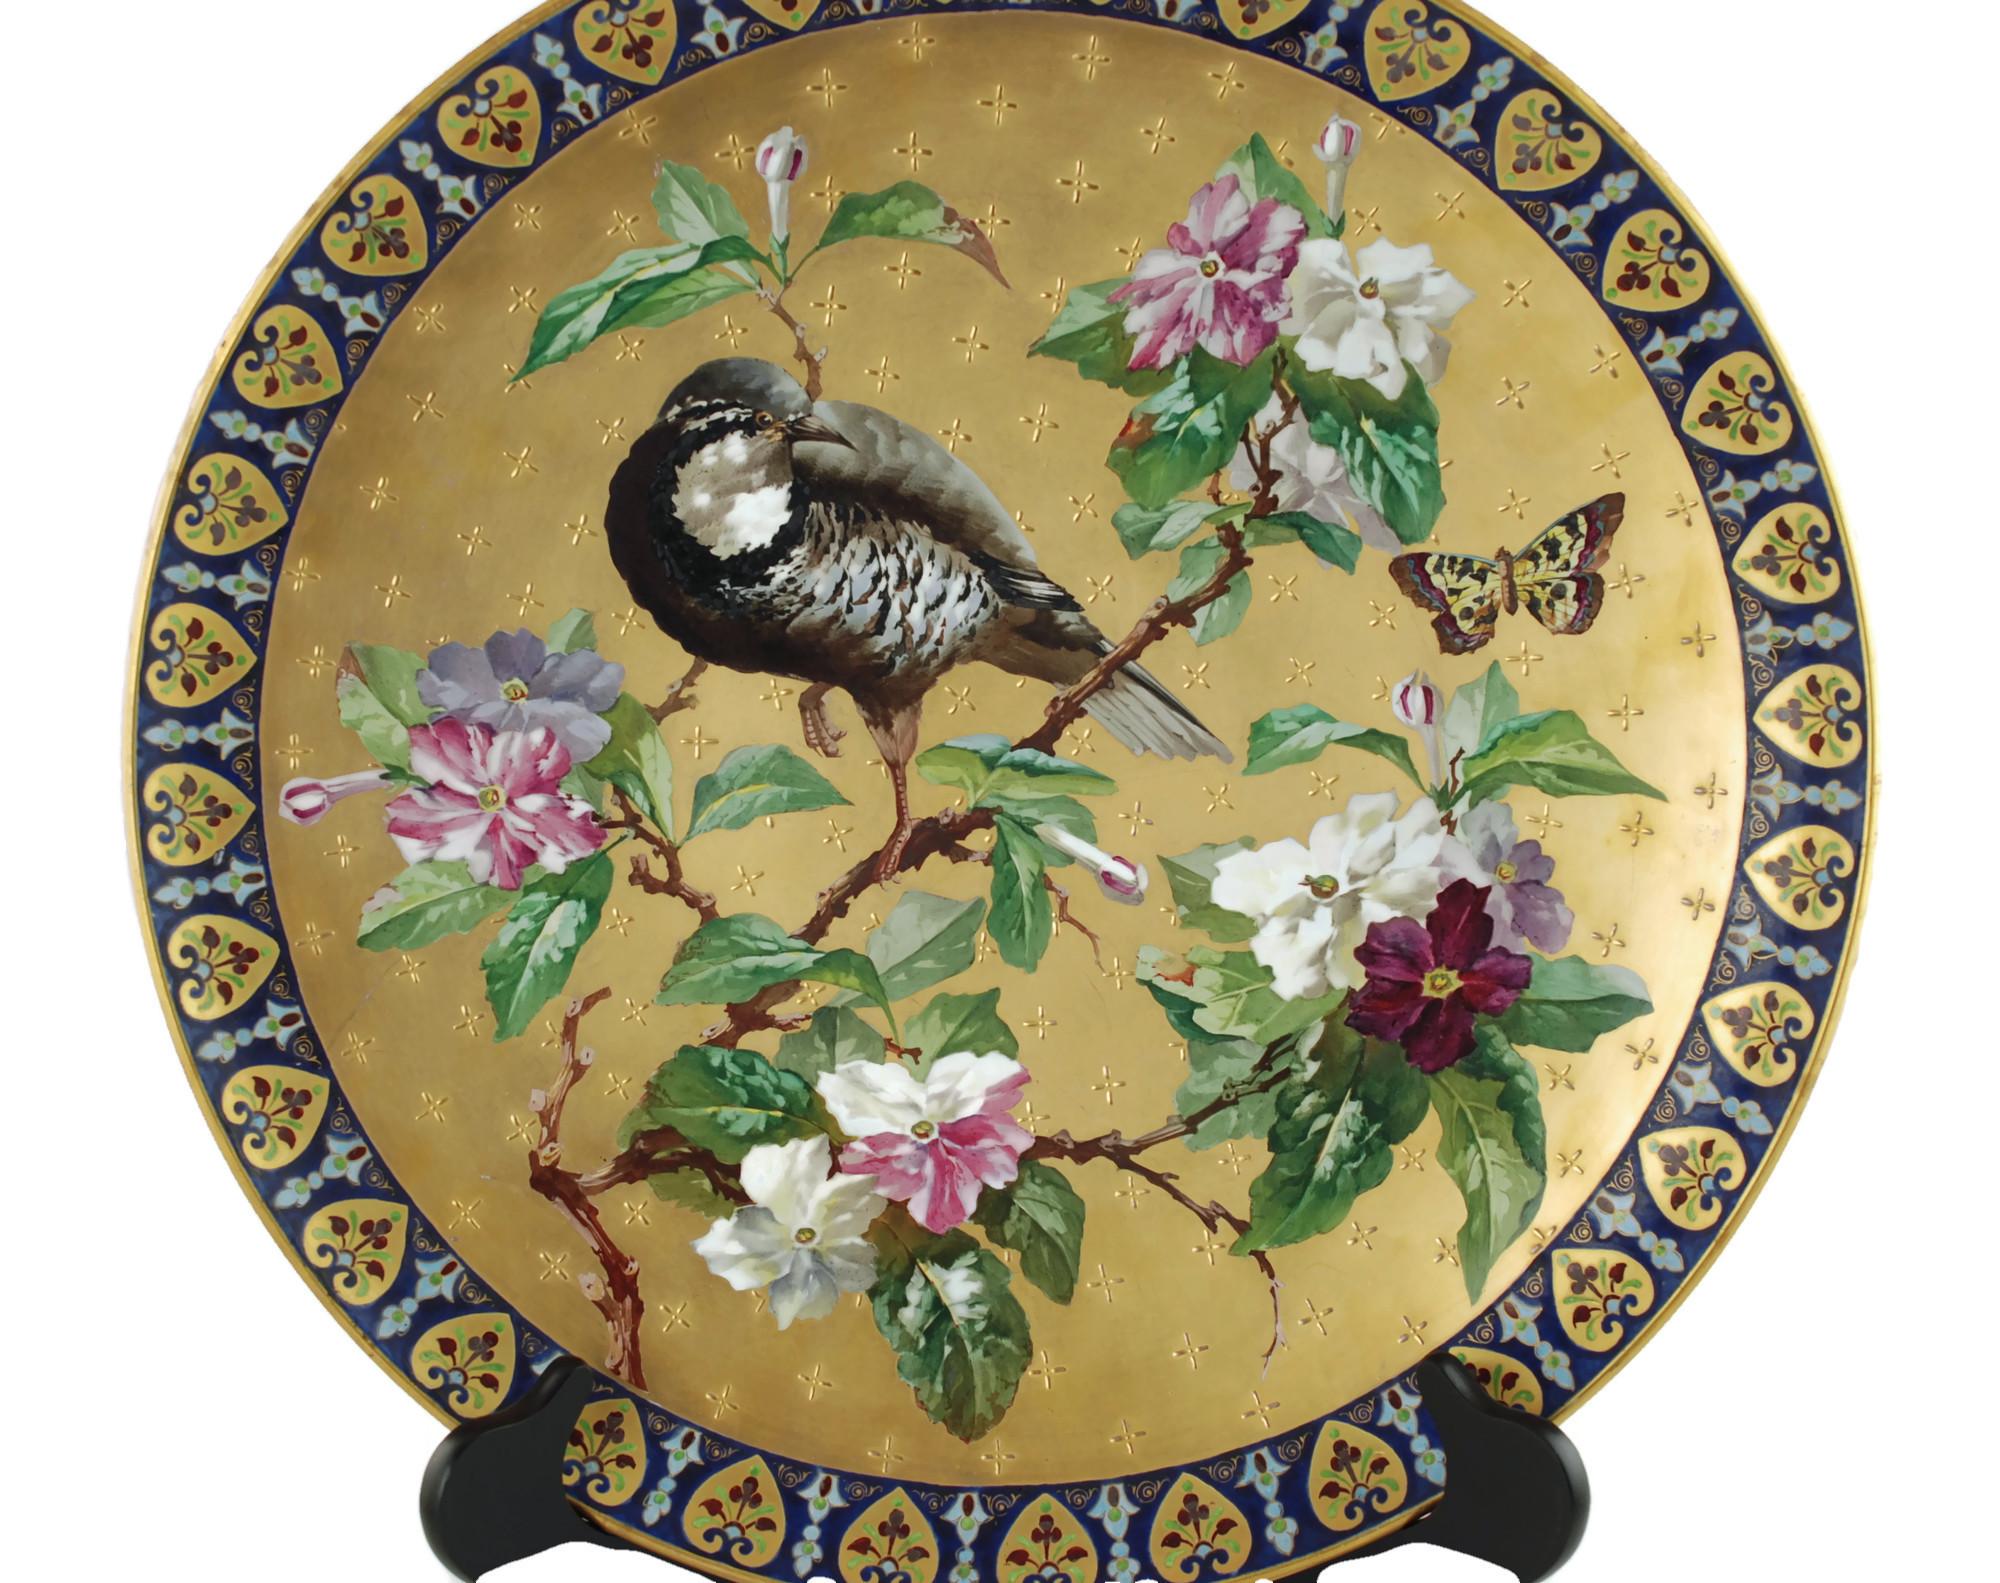 Dieses hervorragende handbemalte französische Keramikgeschirr aus dem 19. Jahrhundert wurde von Hautin Boulenger & Cie in Creil & Montereau hergestellt. Die detailreiche Platte des Aesthetic Movement zeigt ein polychromes Dekor, das eine japanische